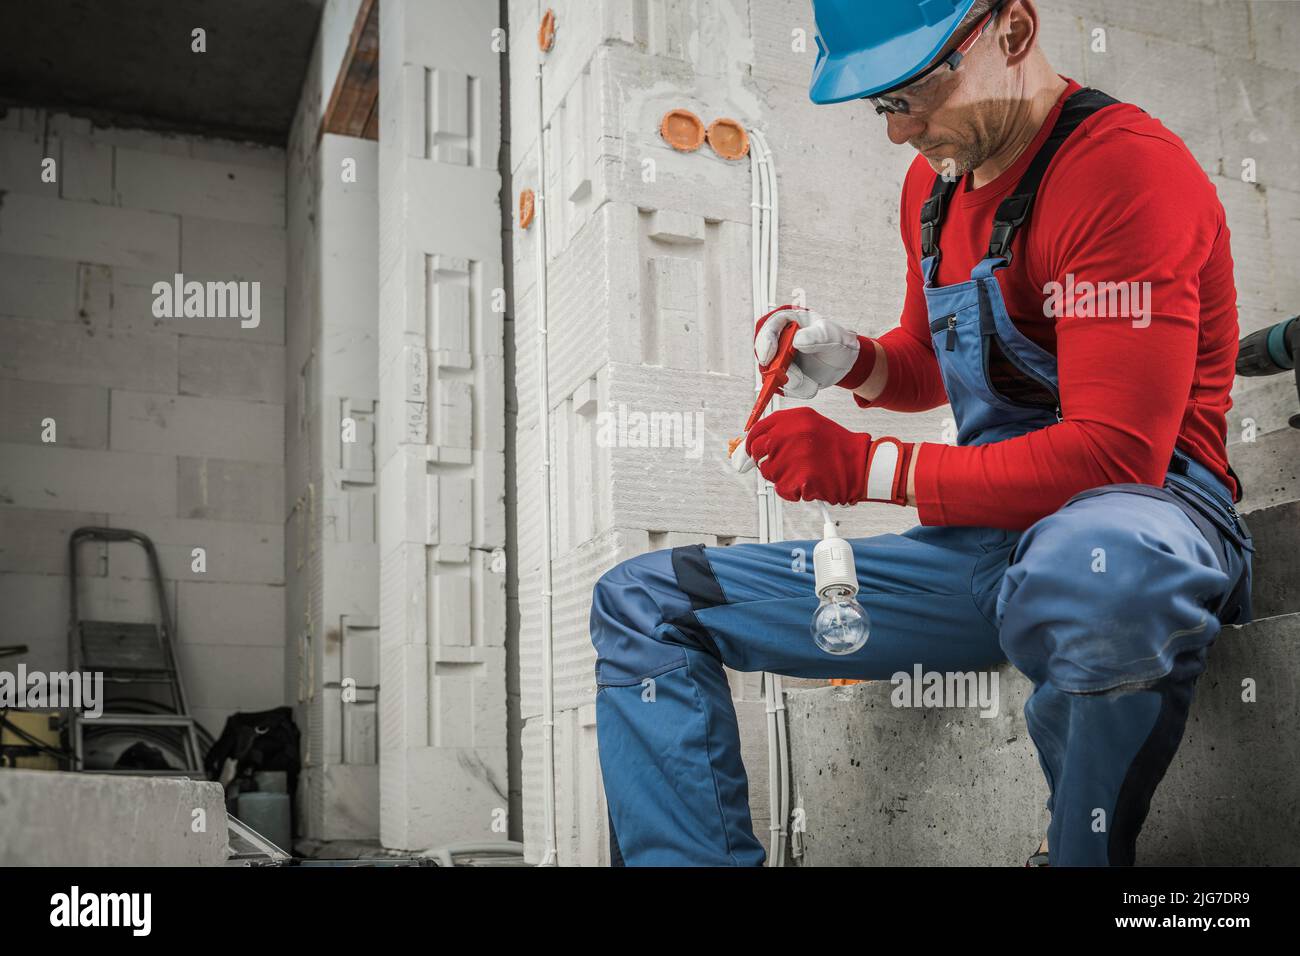 Professioneller Auftragnehmer Elektriker Vorbereitung Lichtpunkt In Neu Entwickelten Beton Bricks House. Kaukasischer Arbeiter in seinem 40s. Stockfoto